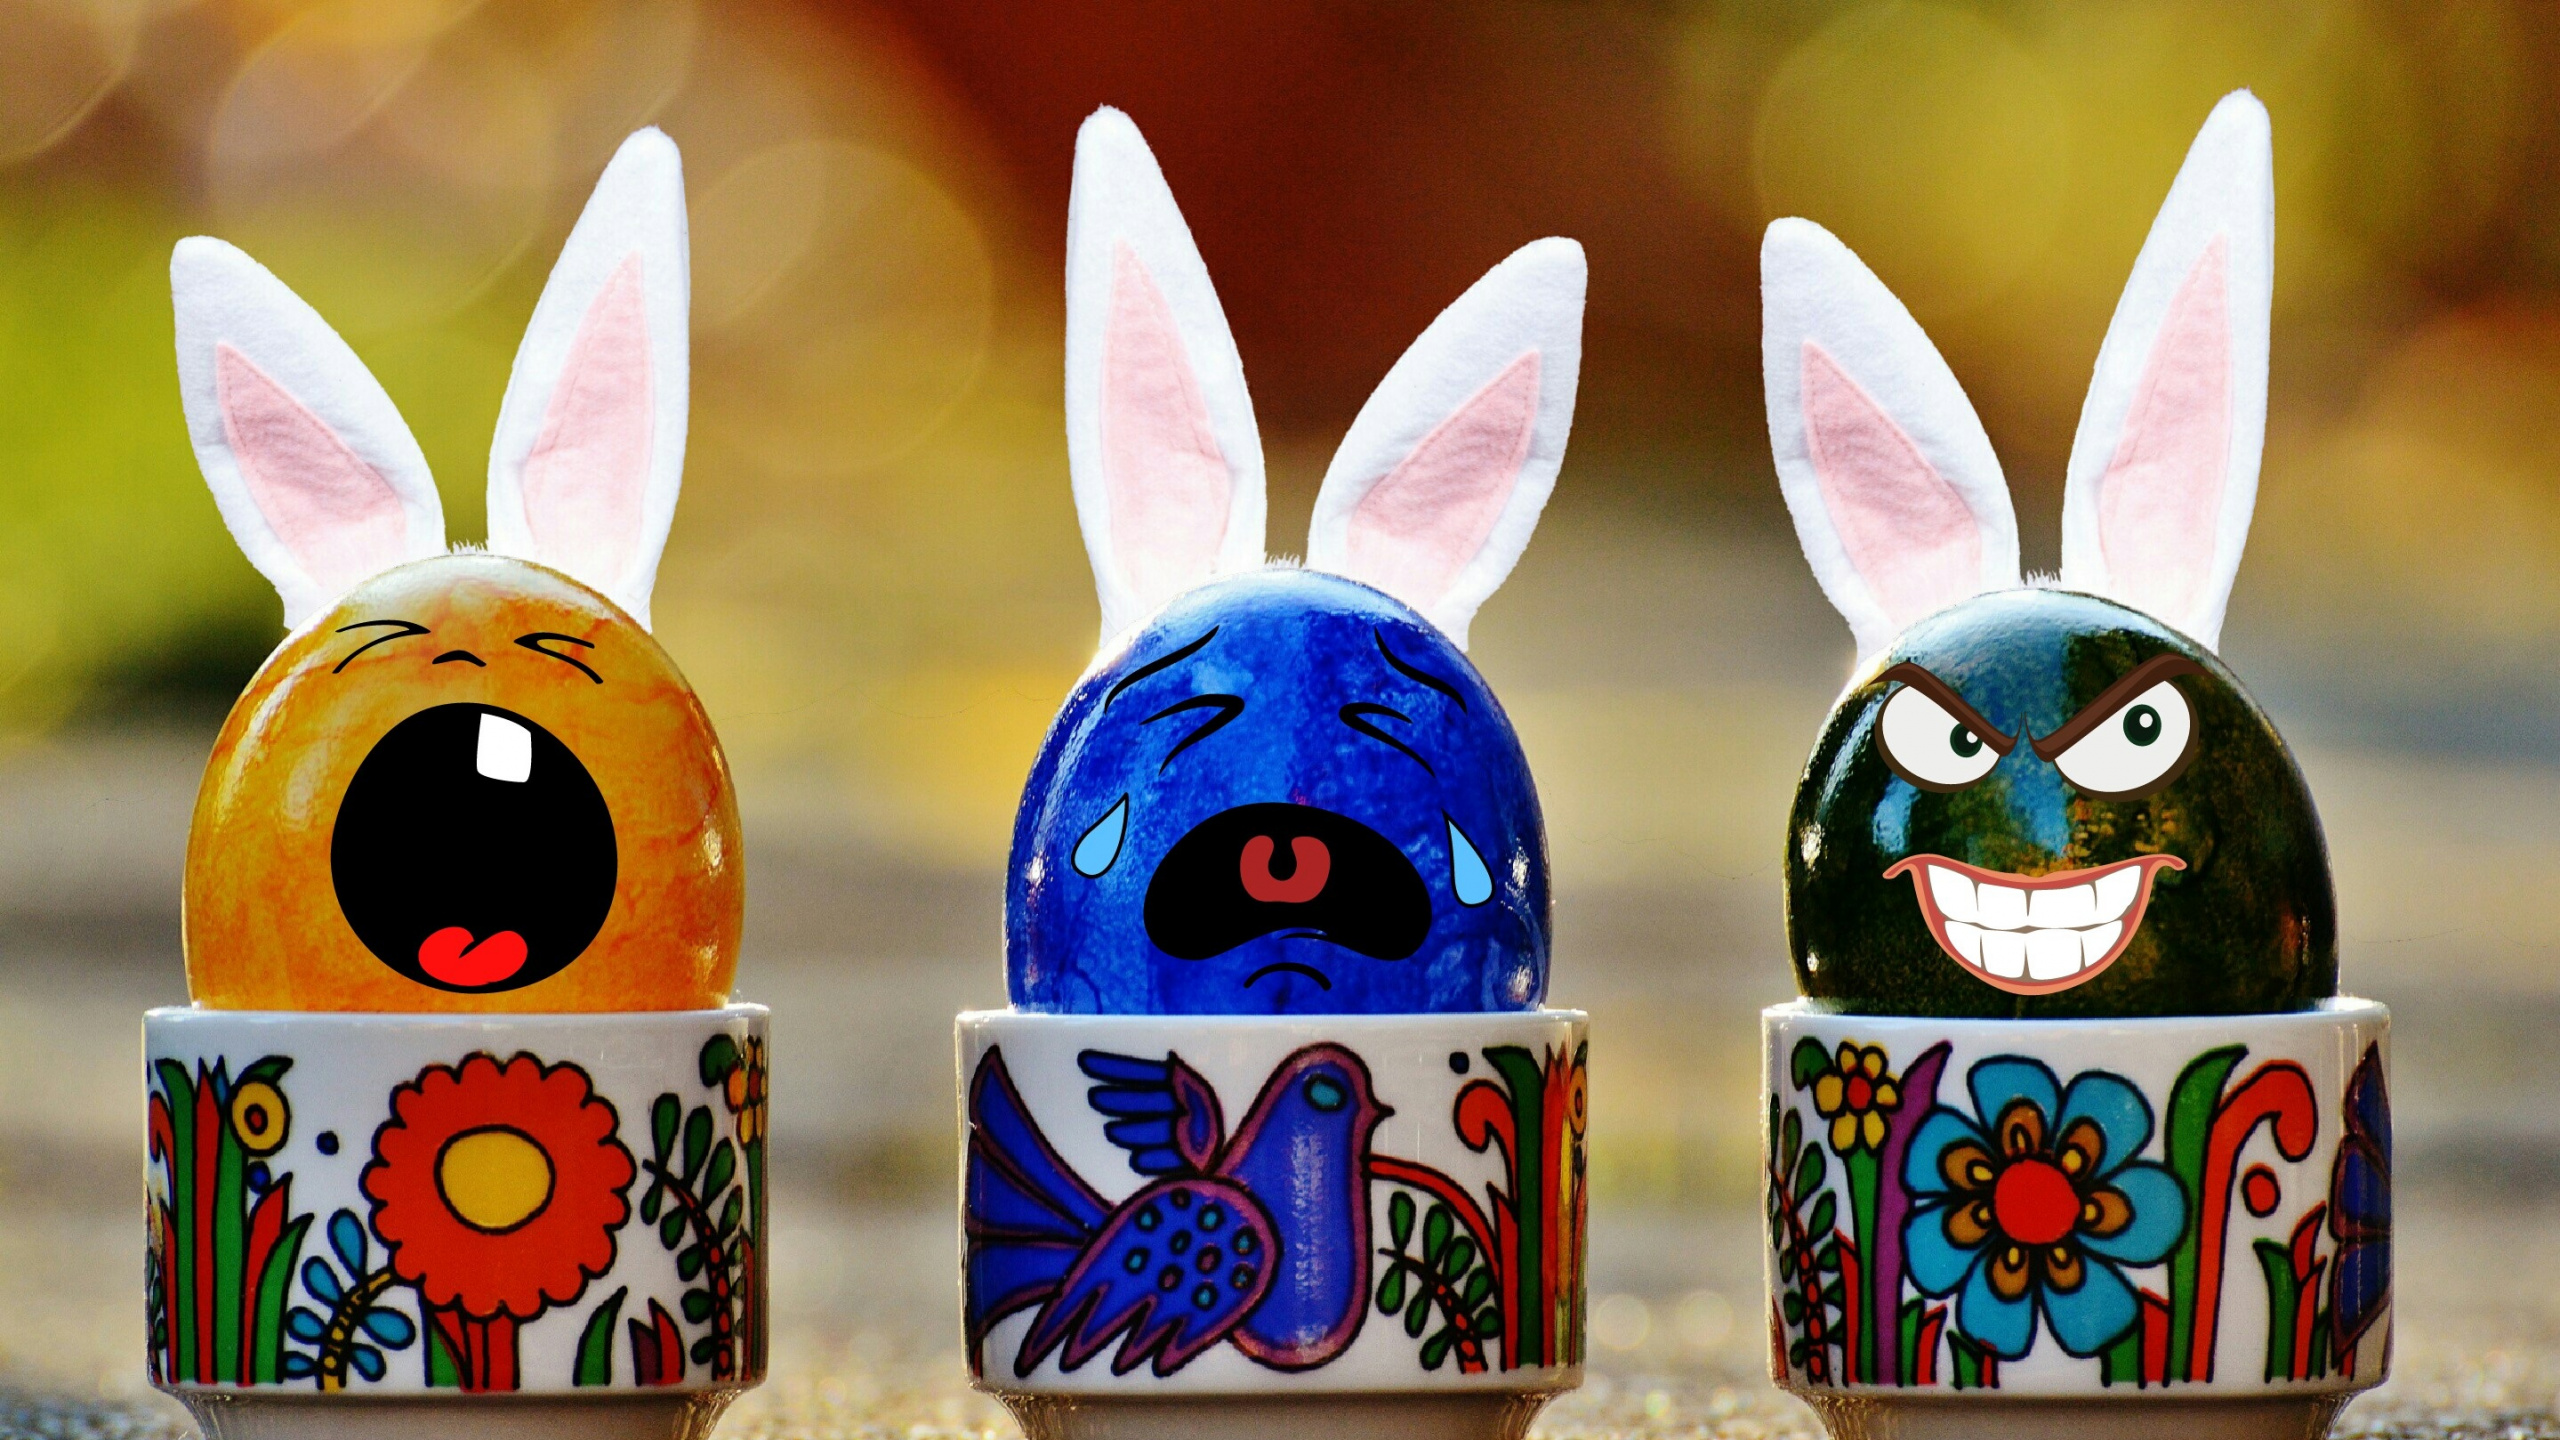 复活节彩蛋, 兔和野兔, 复活节, 复活节兔子, 假日 壁纸 2560x1440 允许